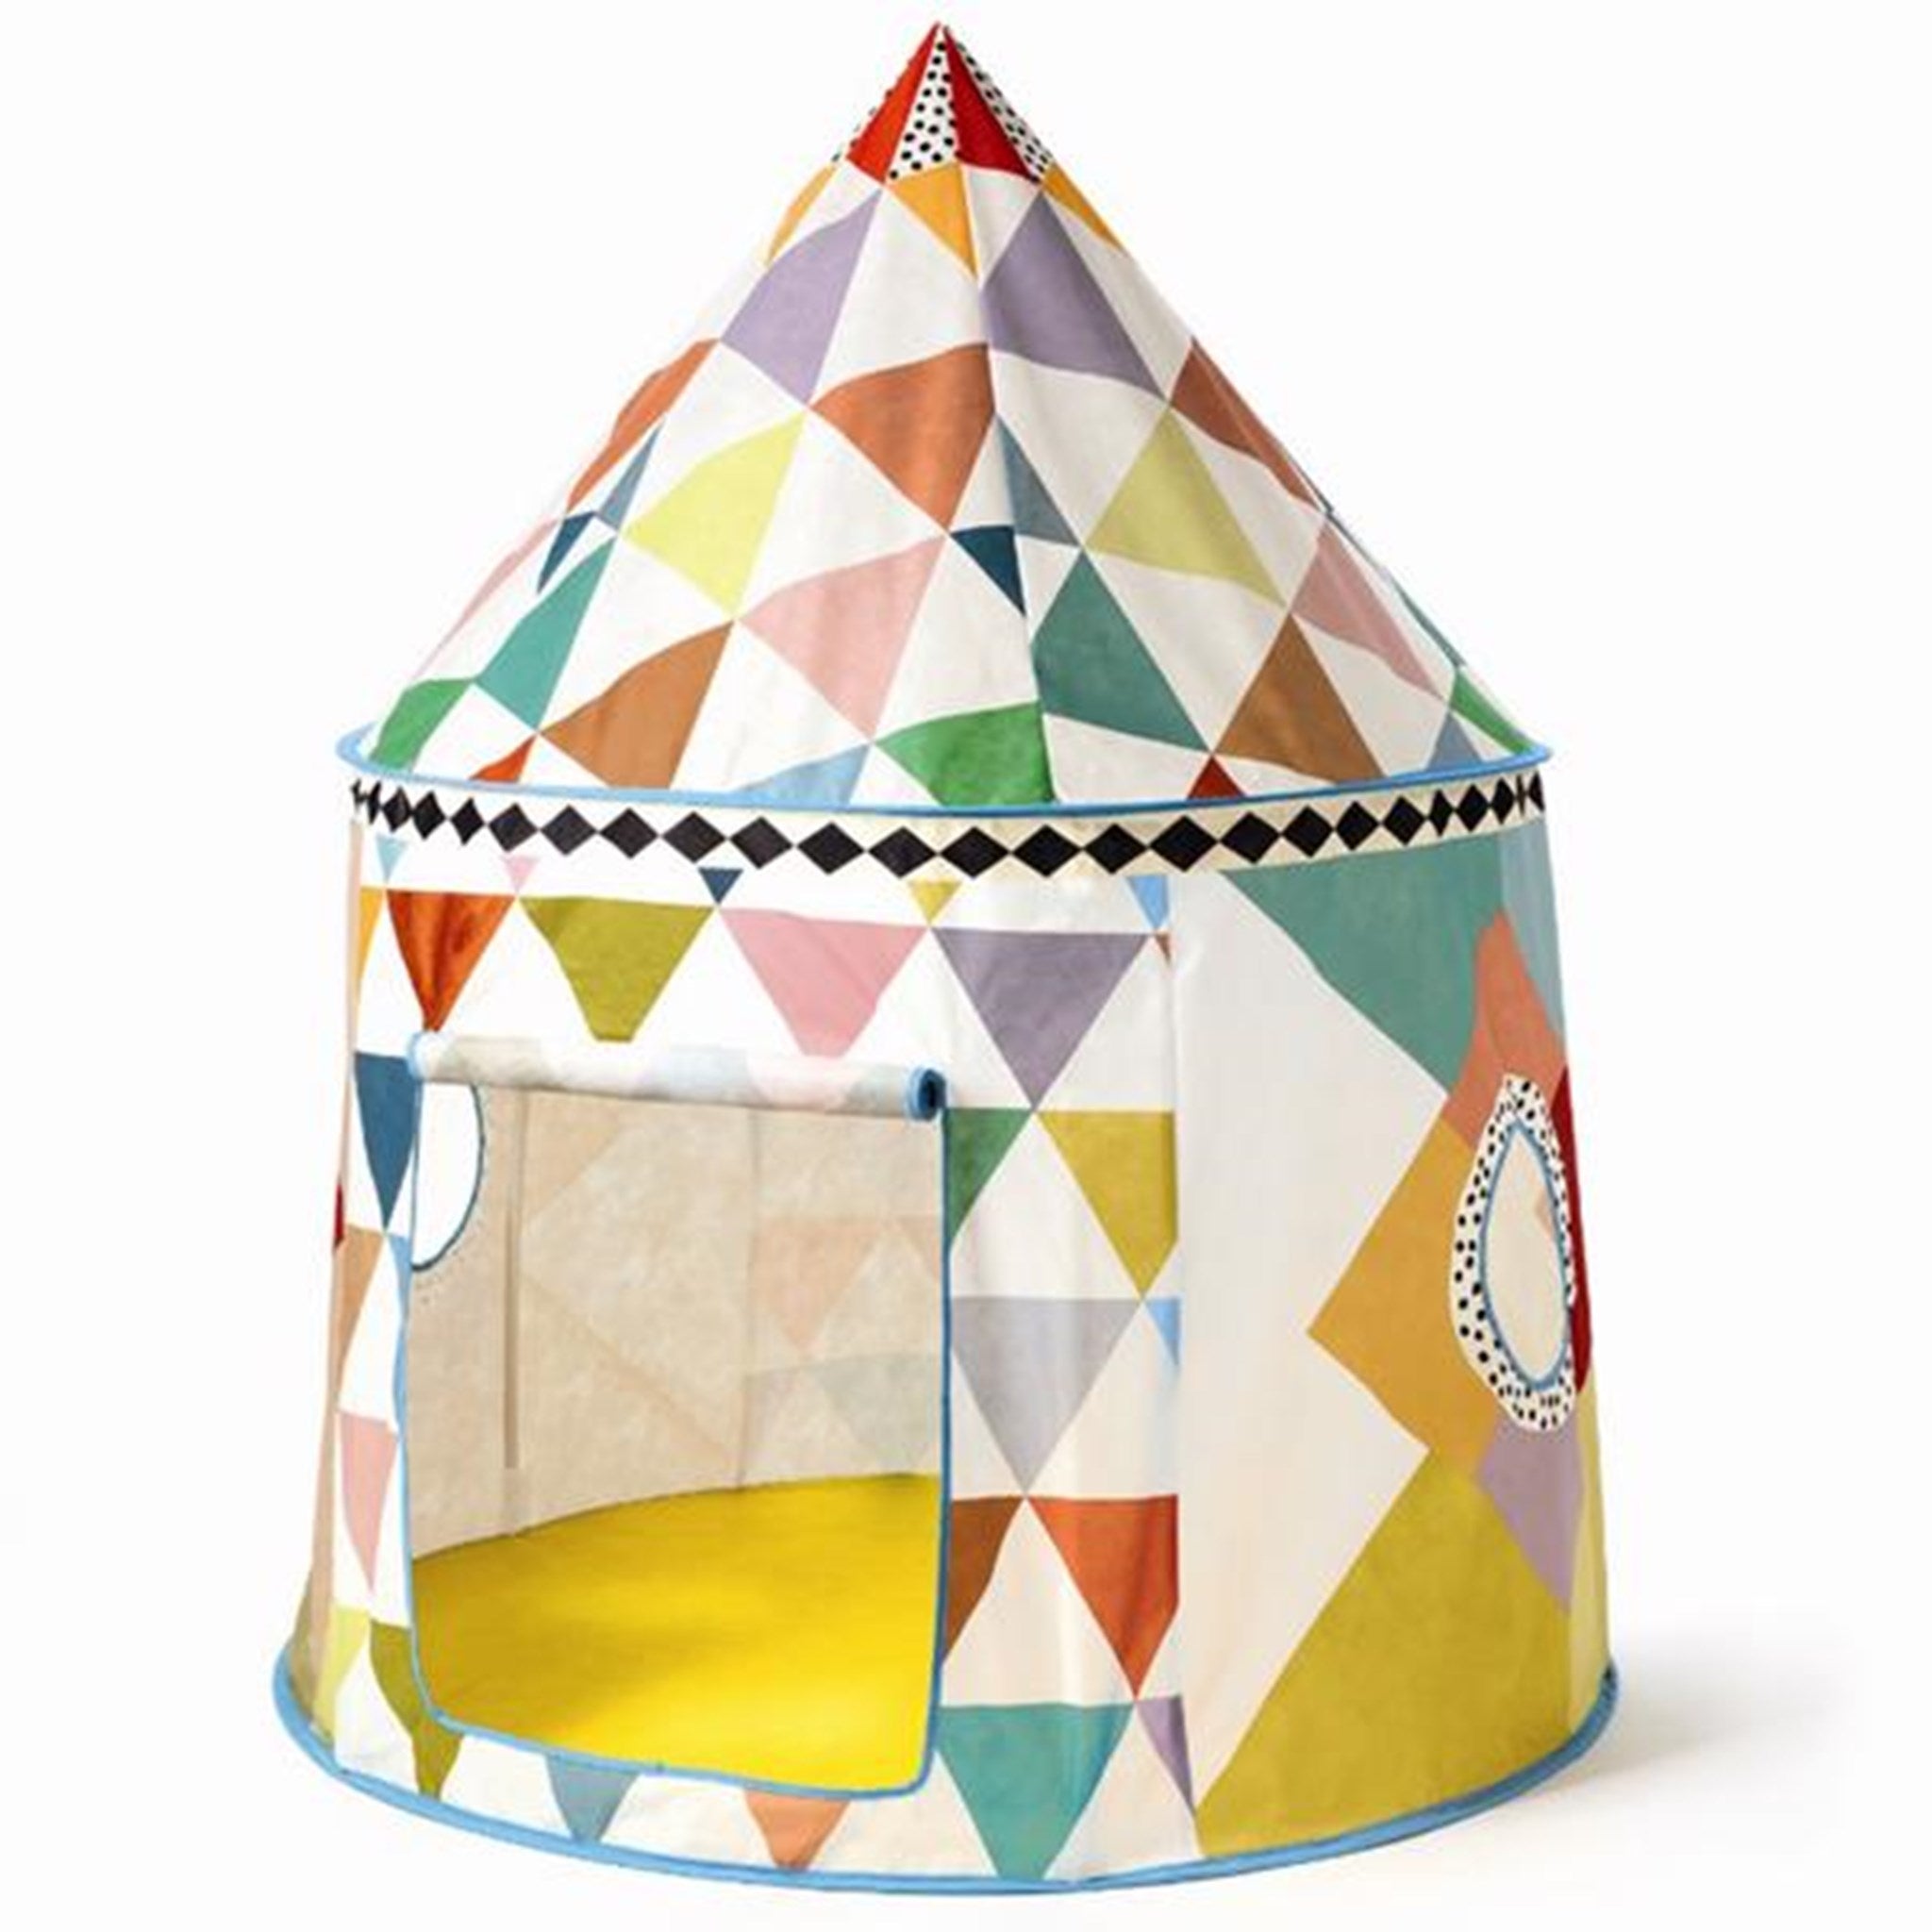 Djeco Tent - Multicolored Hut